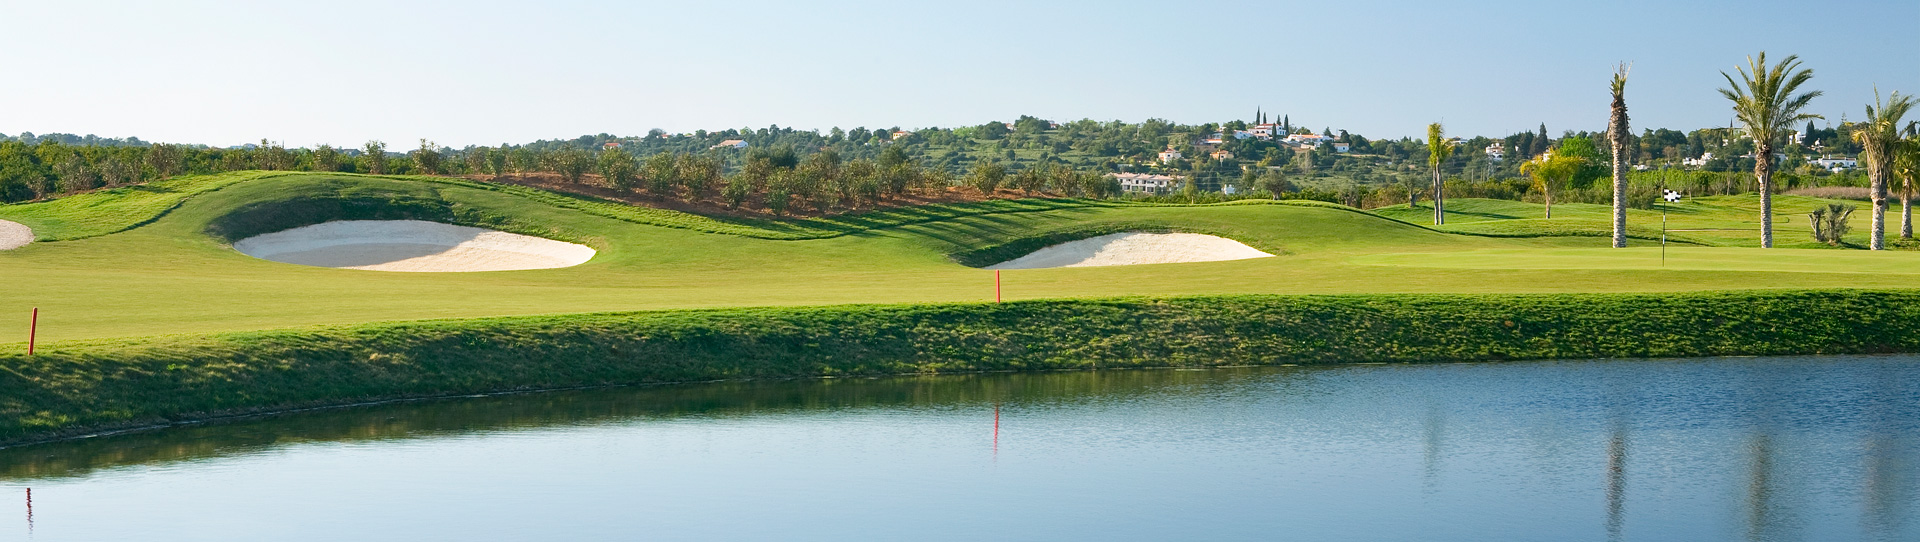 Portugal golf courses - Amendoeira O’Connor Jnr. - Photo 3